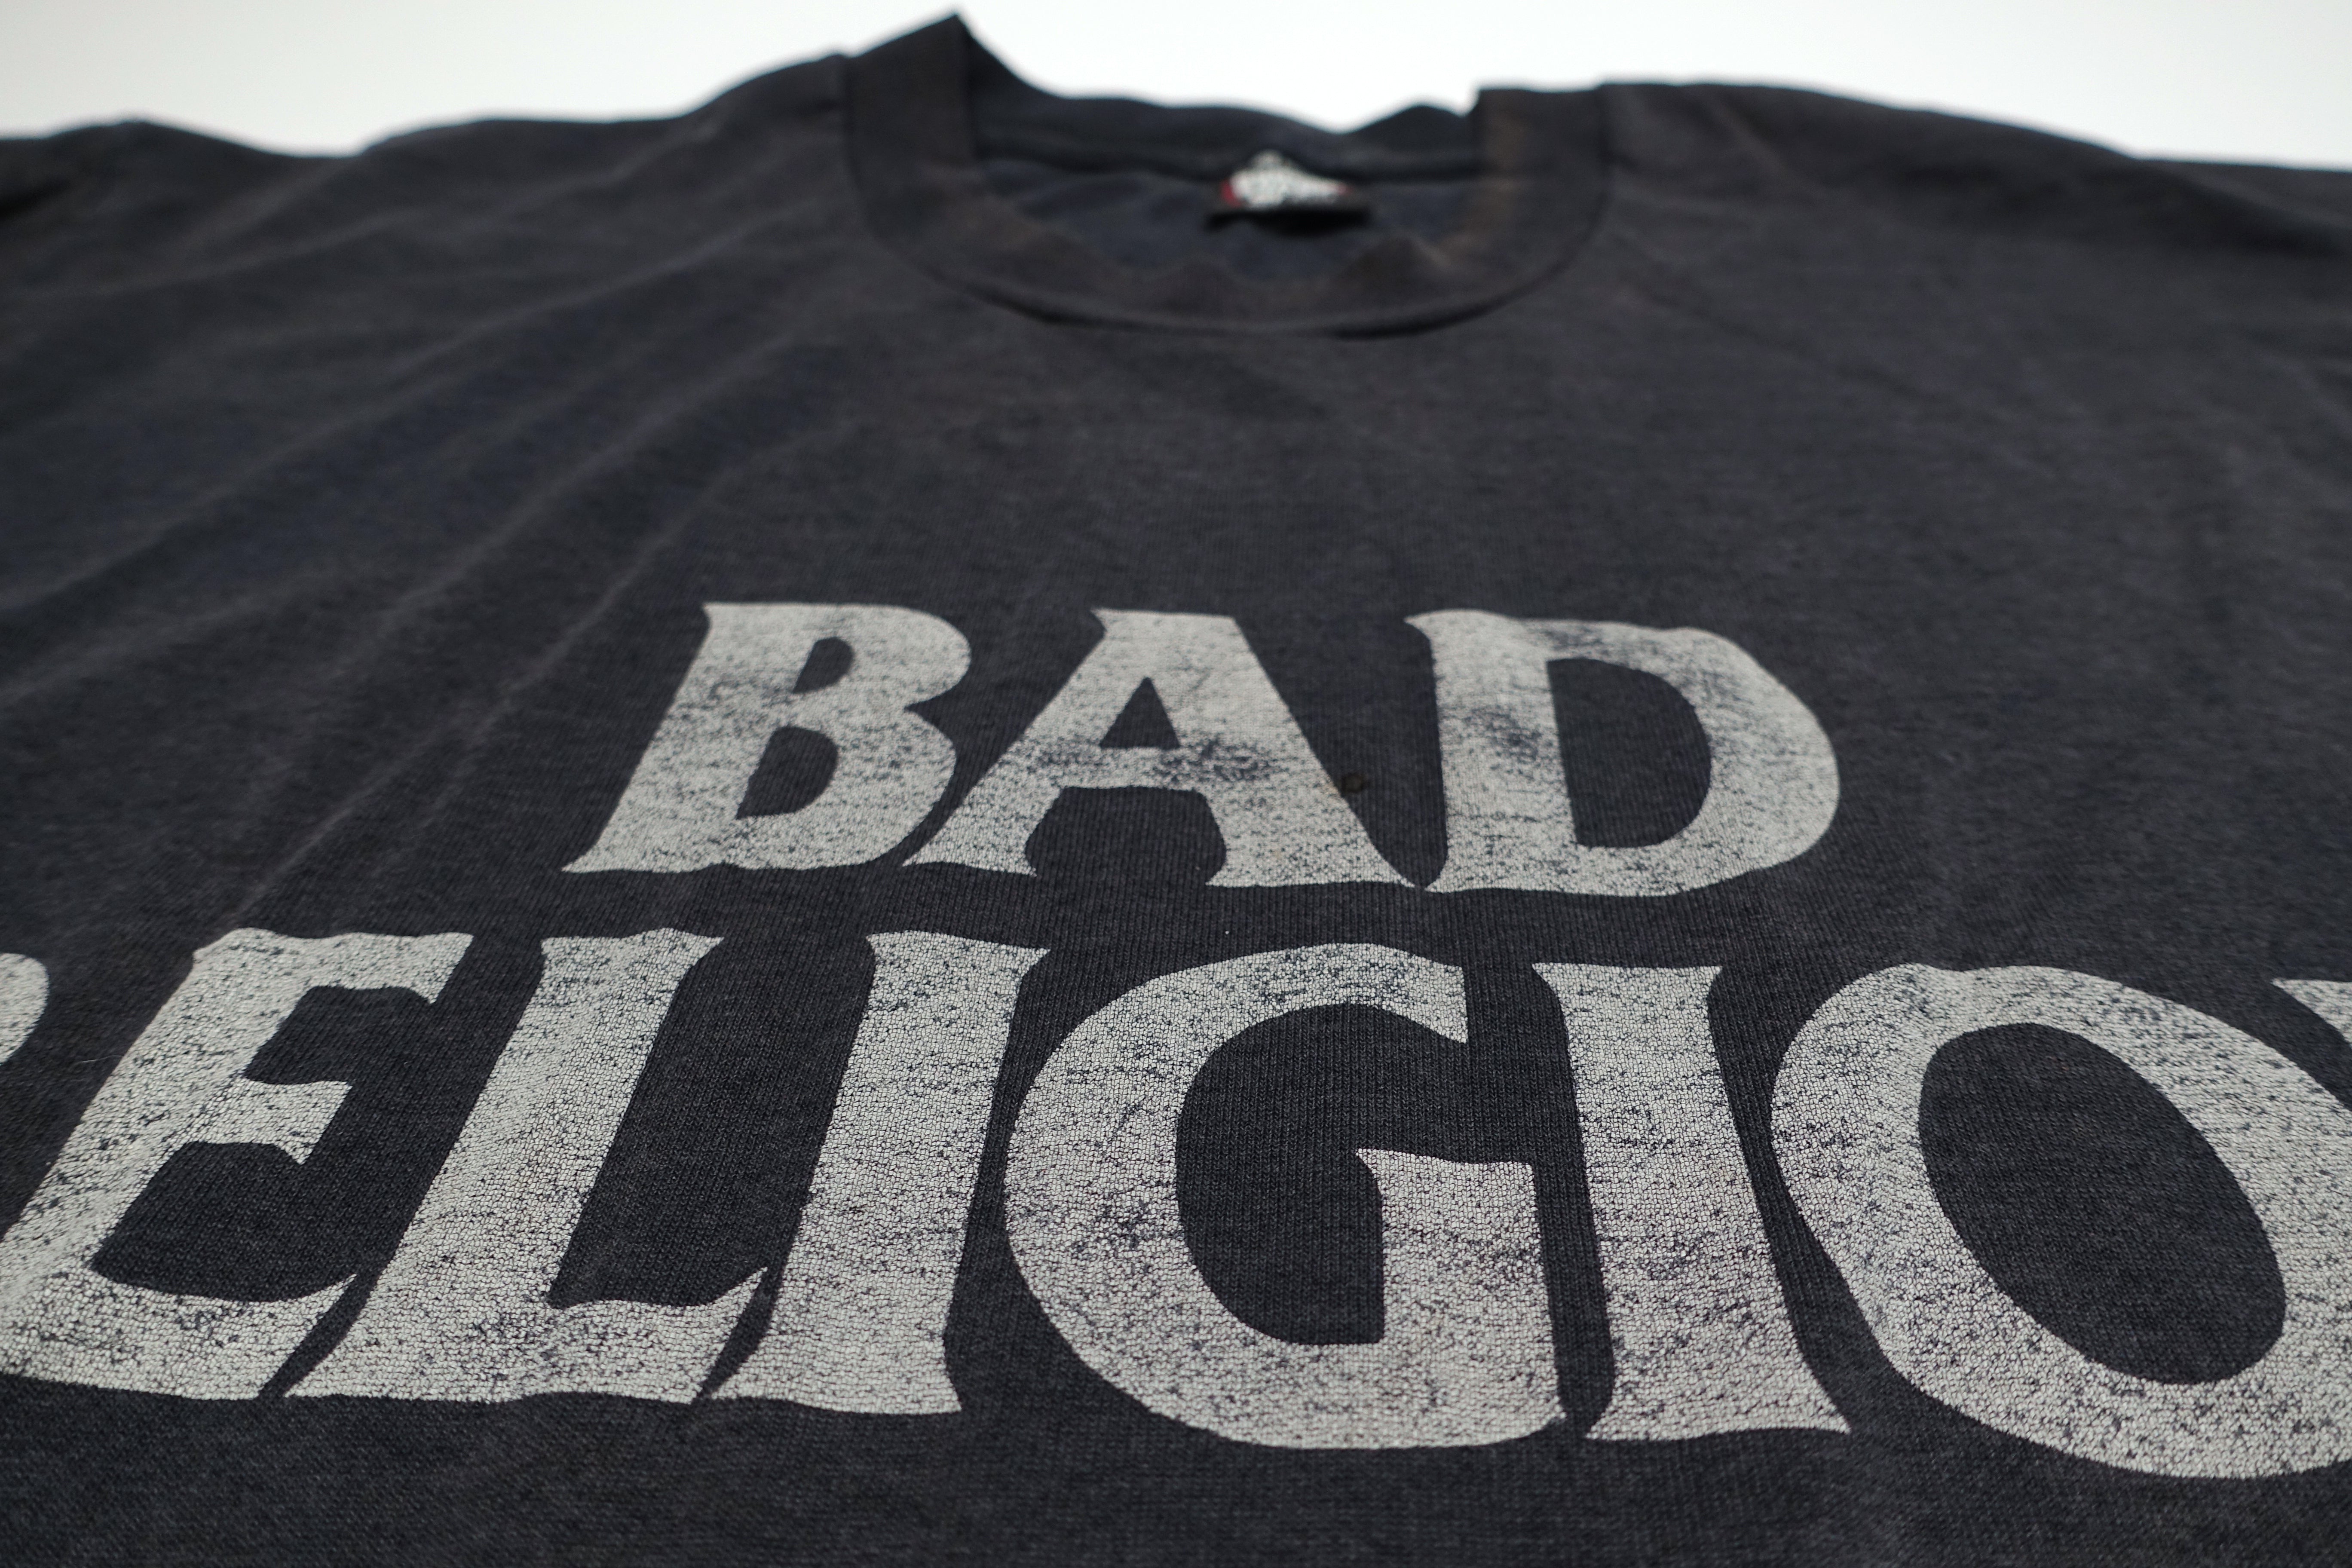 Bad Religion - Against The Grain 1991 Tour Shirt Size XL